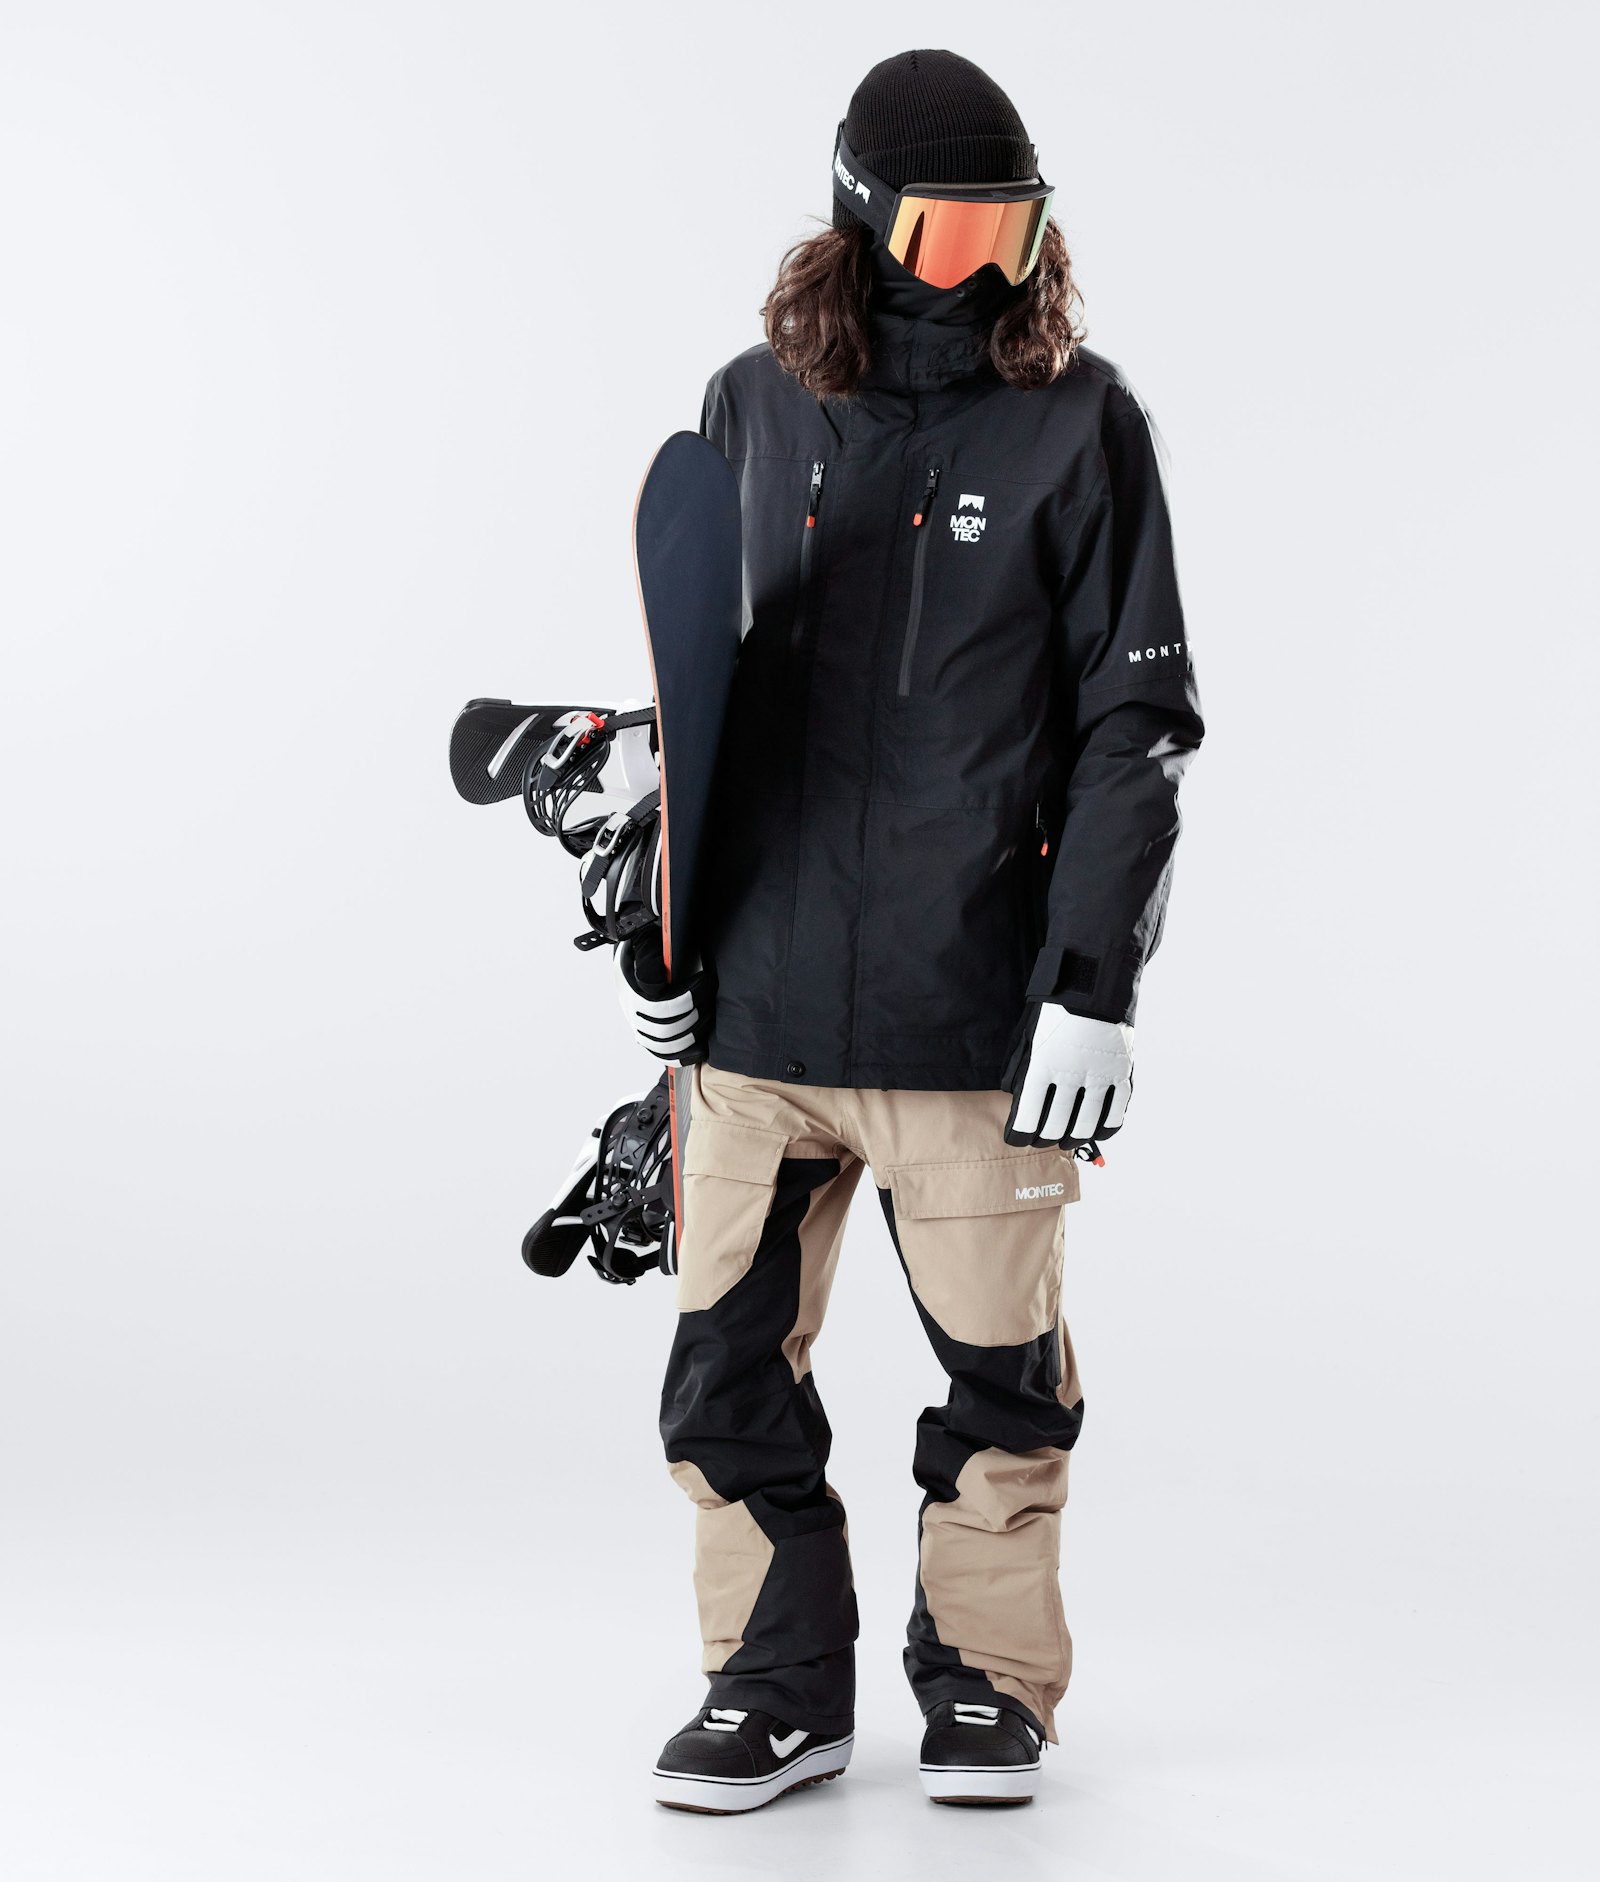 Fawk 2020 Snowboard Jacket Men Black Renewed